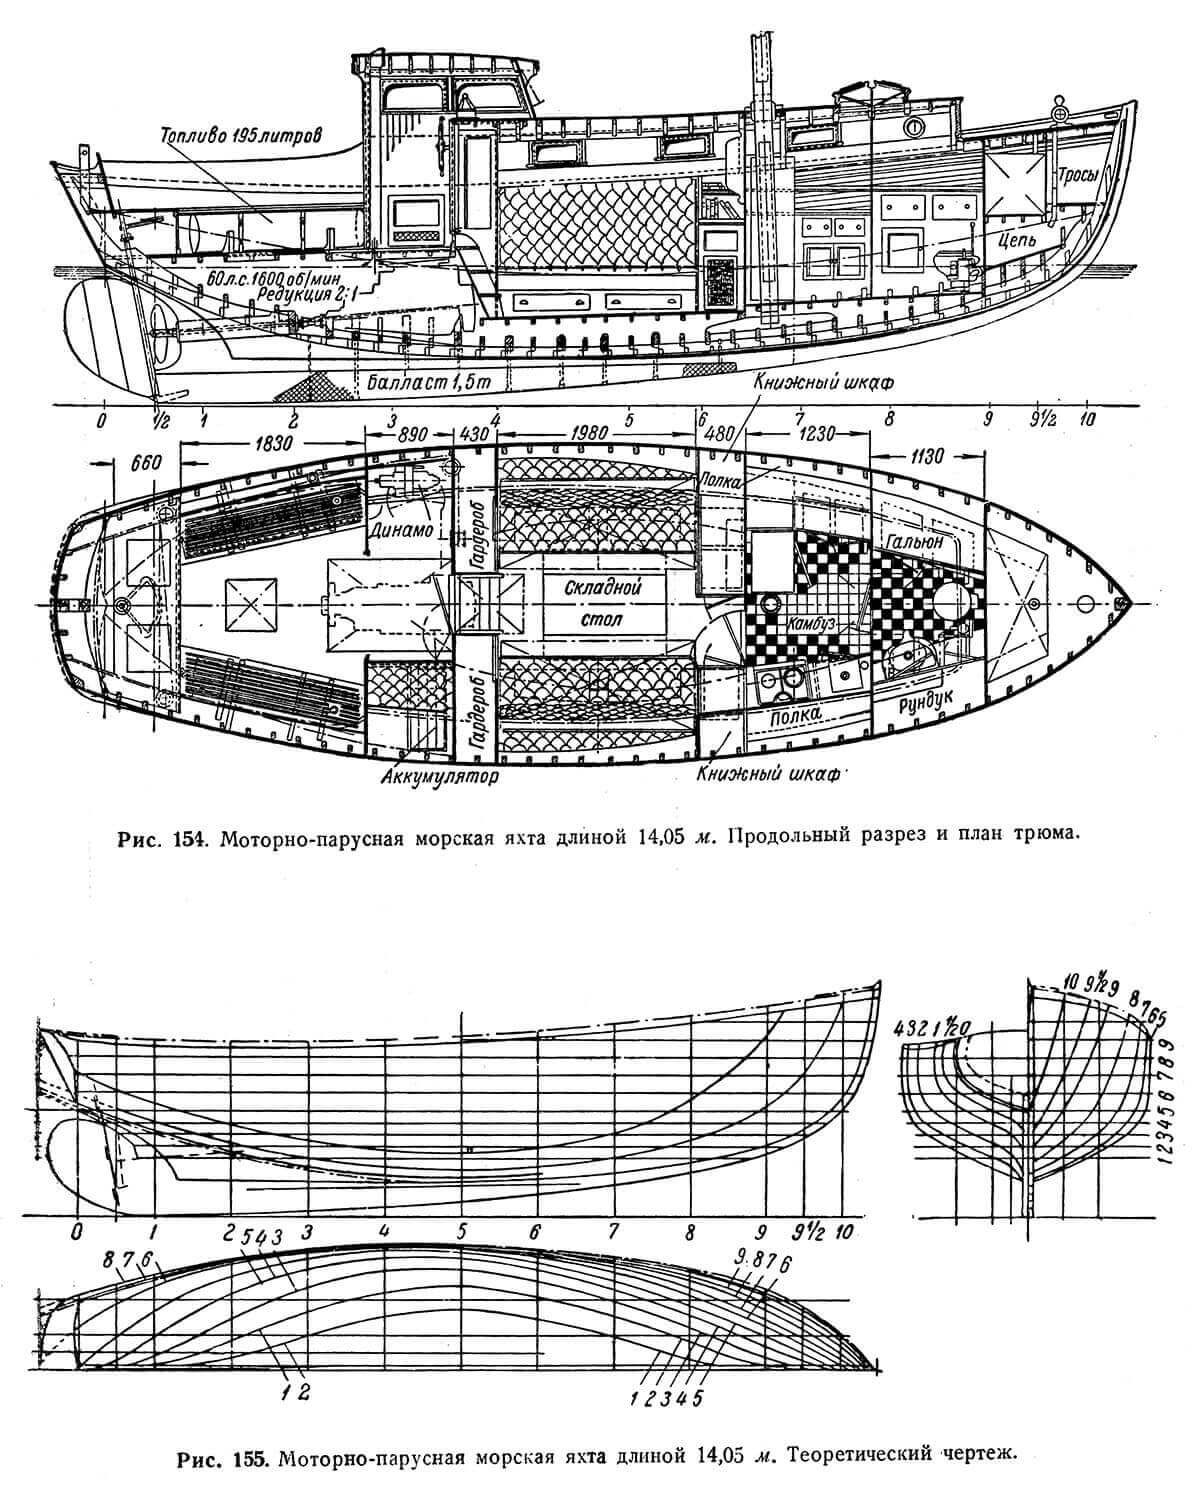 Моторно-парусная морская яхта длиной 14,05 м